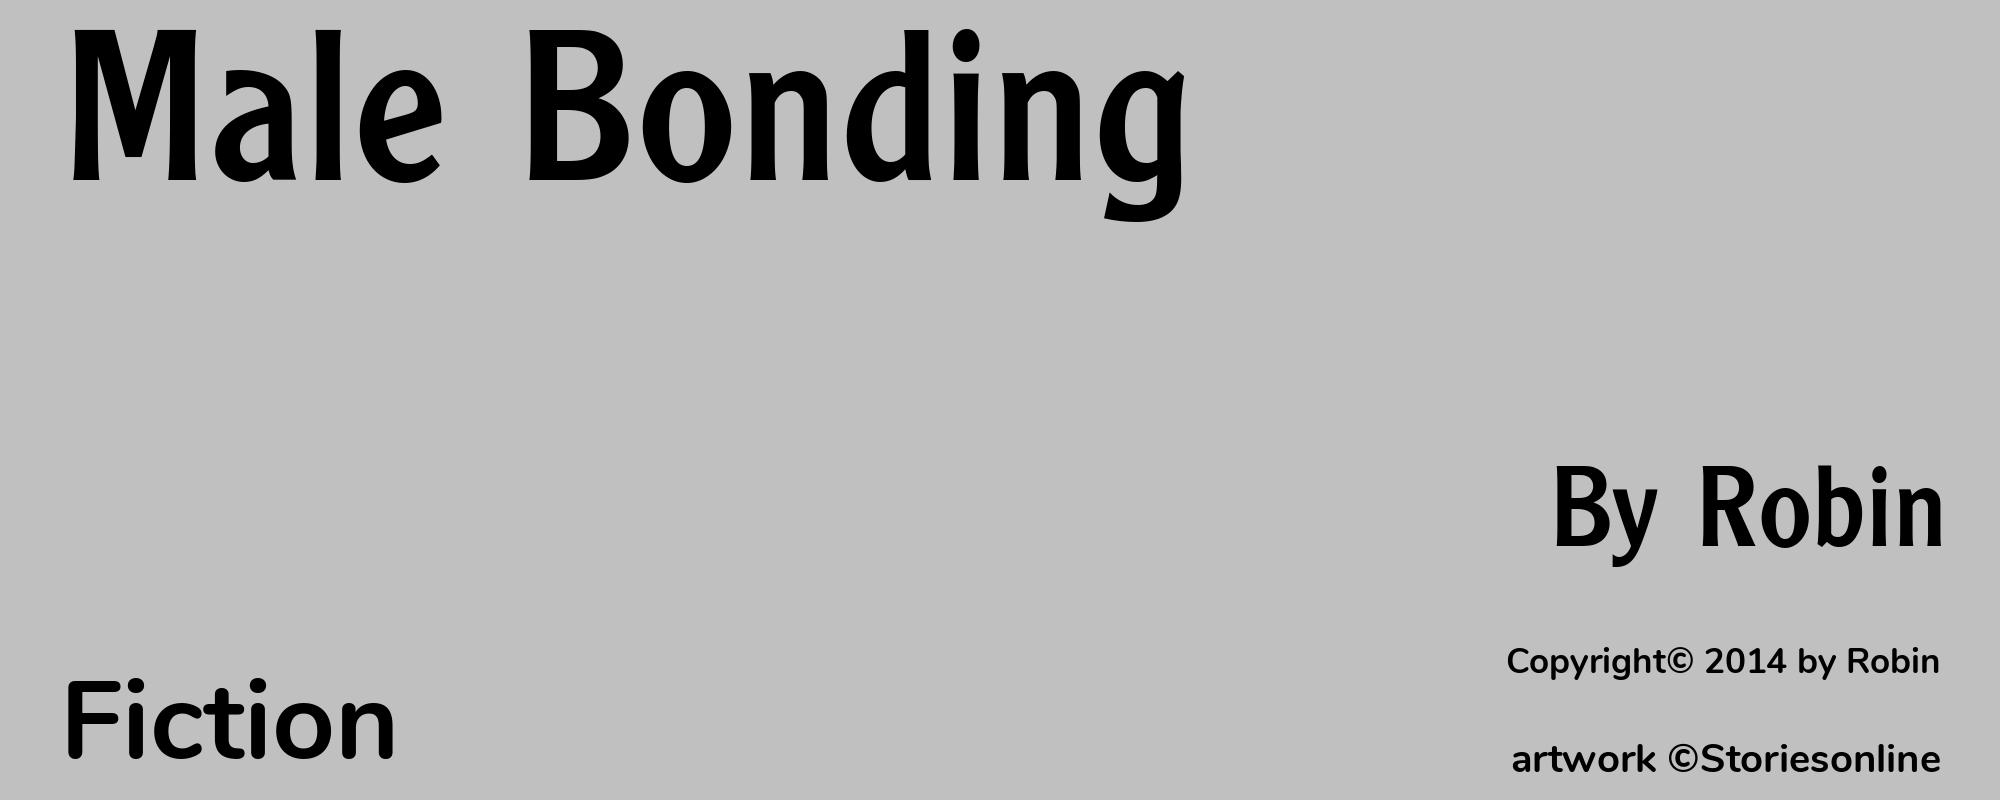 Male Bonding - Cover